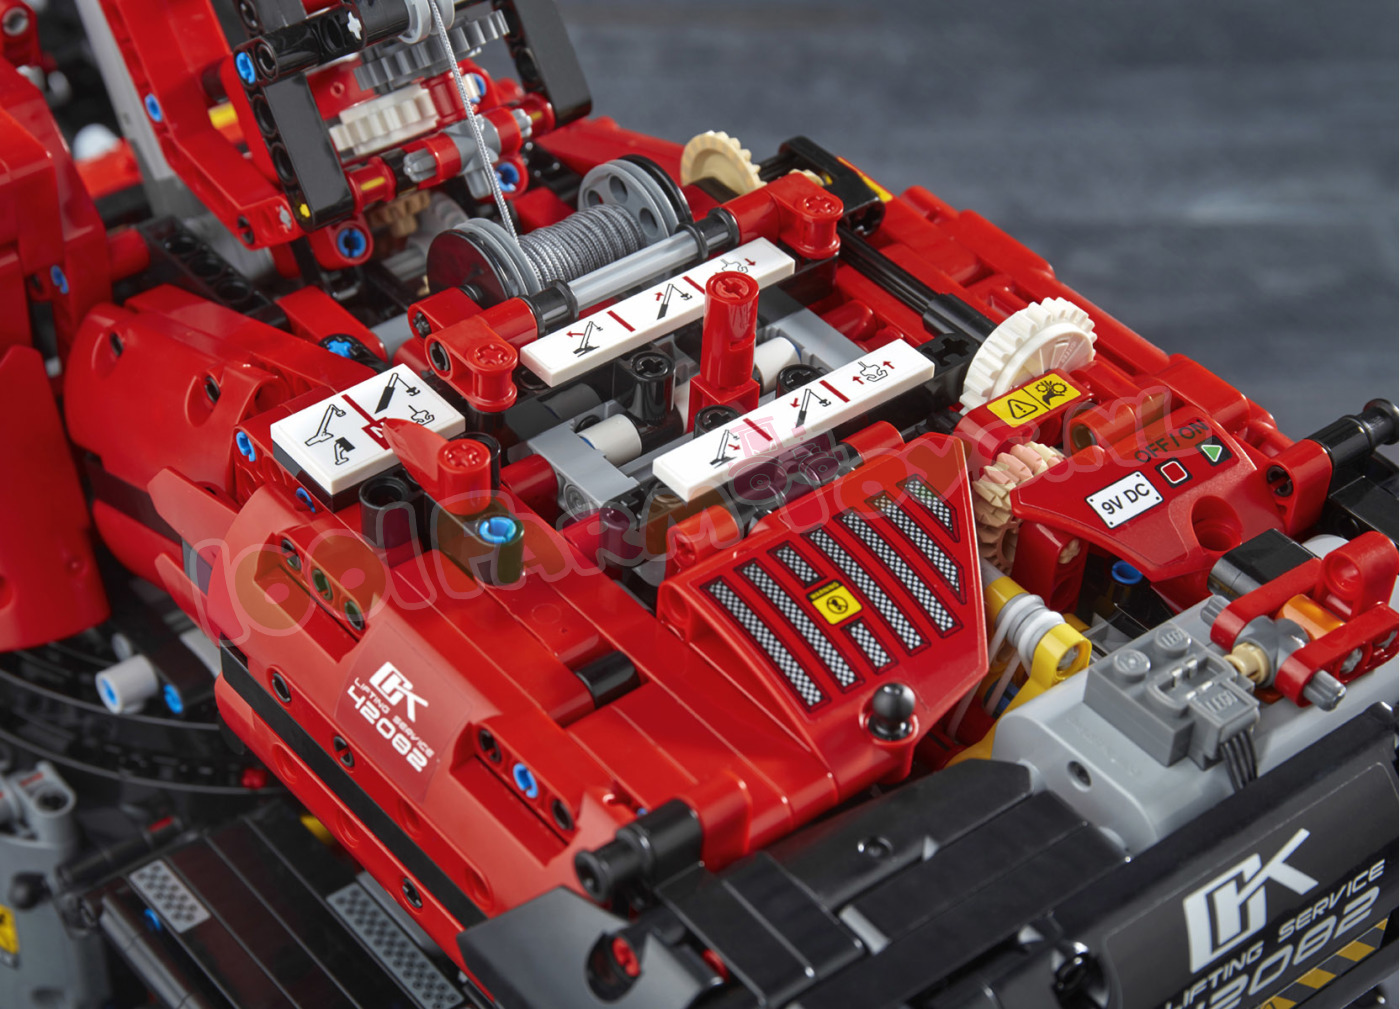 Vul in Absoluut Waden LEGO TECHNIC KRAAN VOOR ALLE TERREINEN - 42082 - LEGO Technic - LEGO -  1001Farmtoys landbouwspeelgoed - LET OP product wordt niet meer geproduceerd